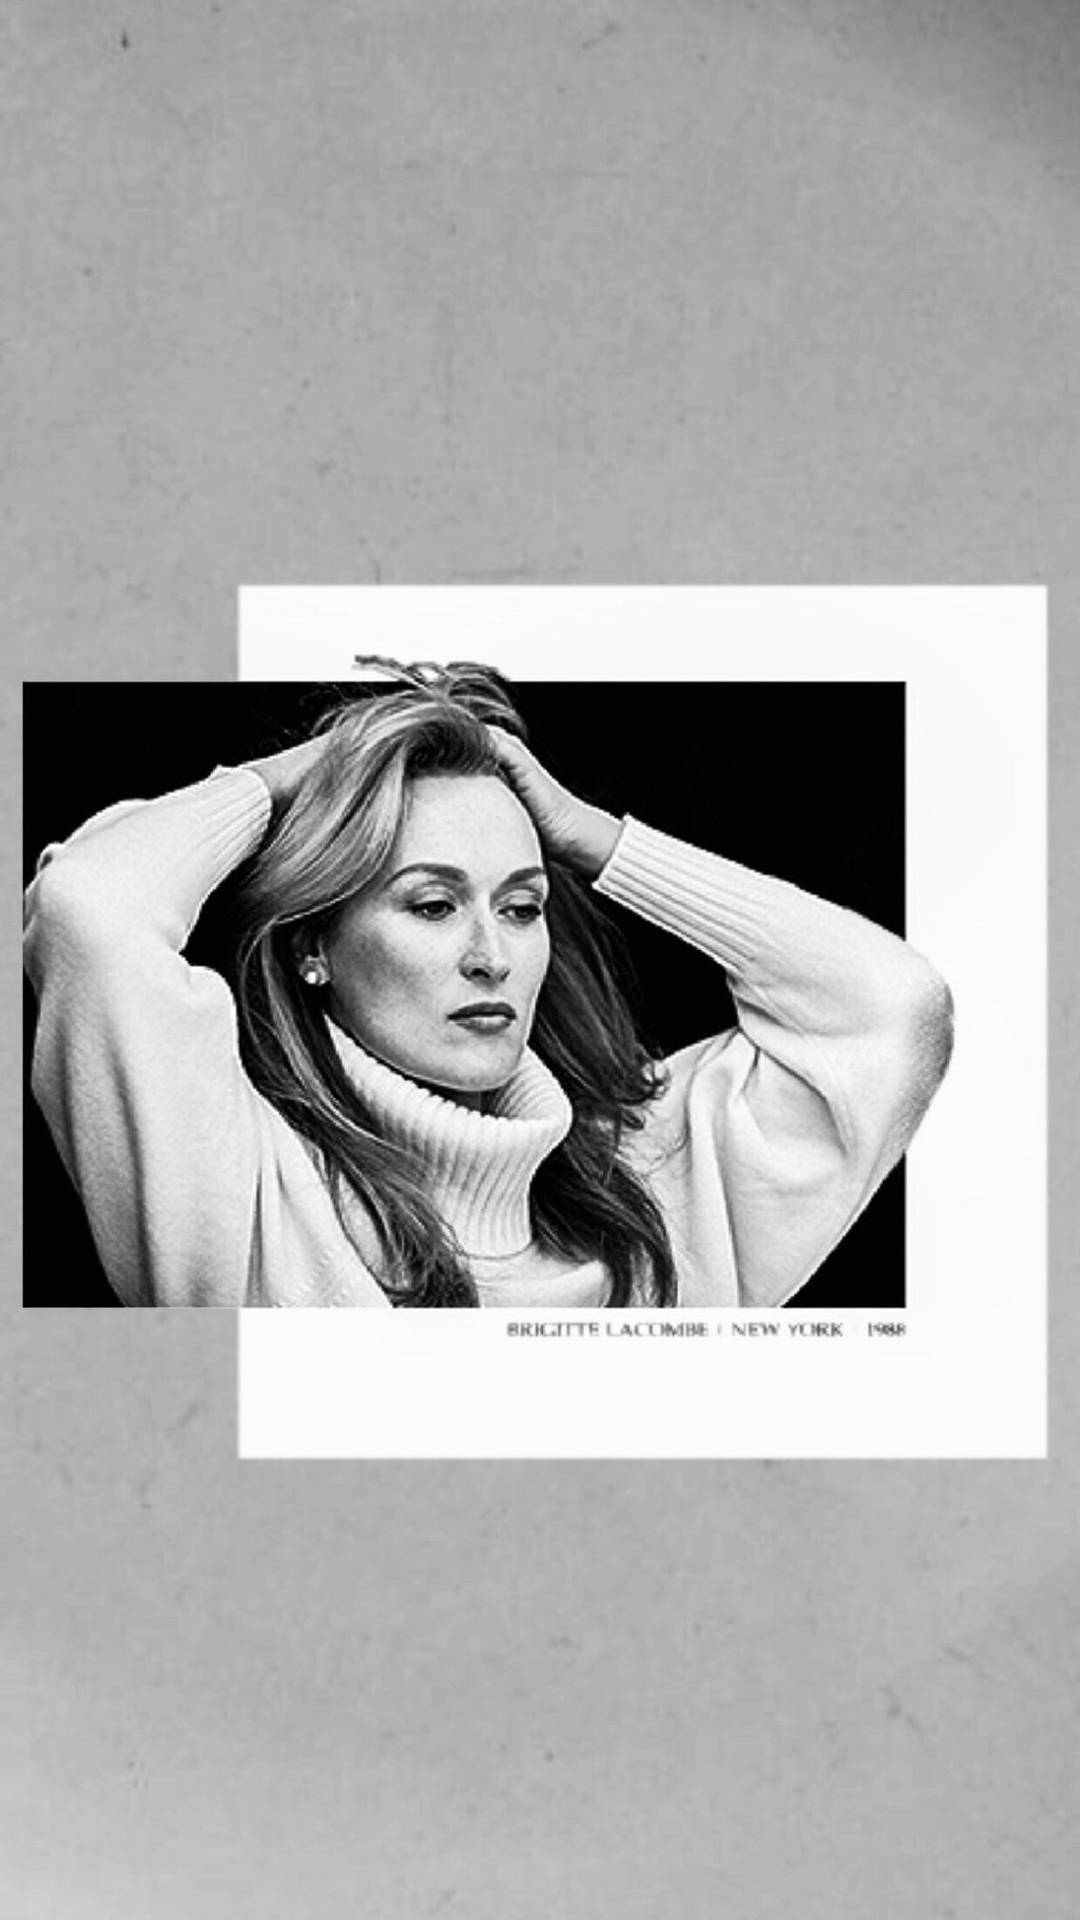 Aesthetic Image Of Meryl Streep Background